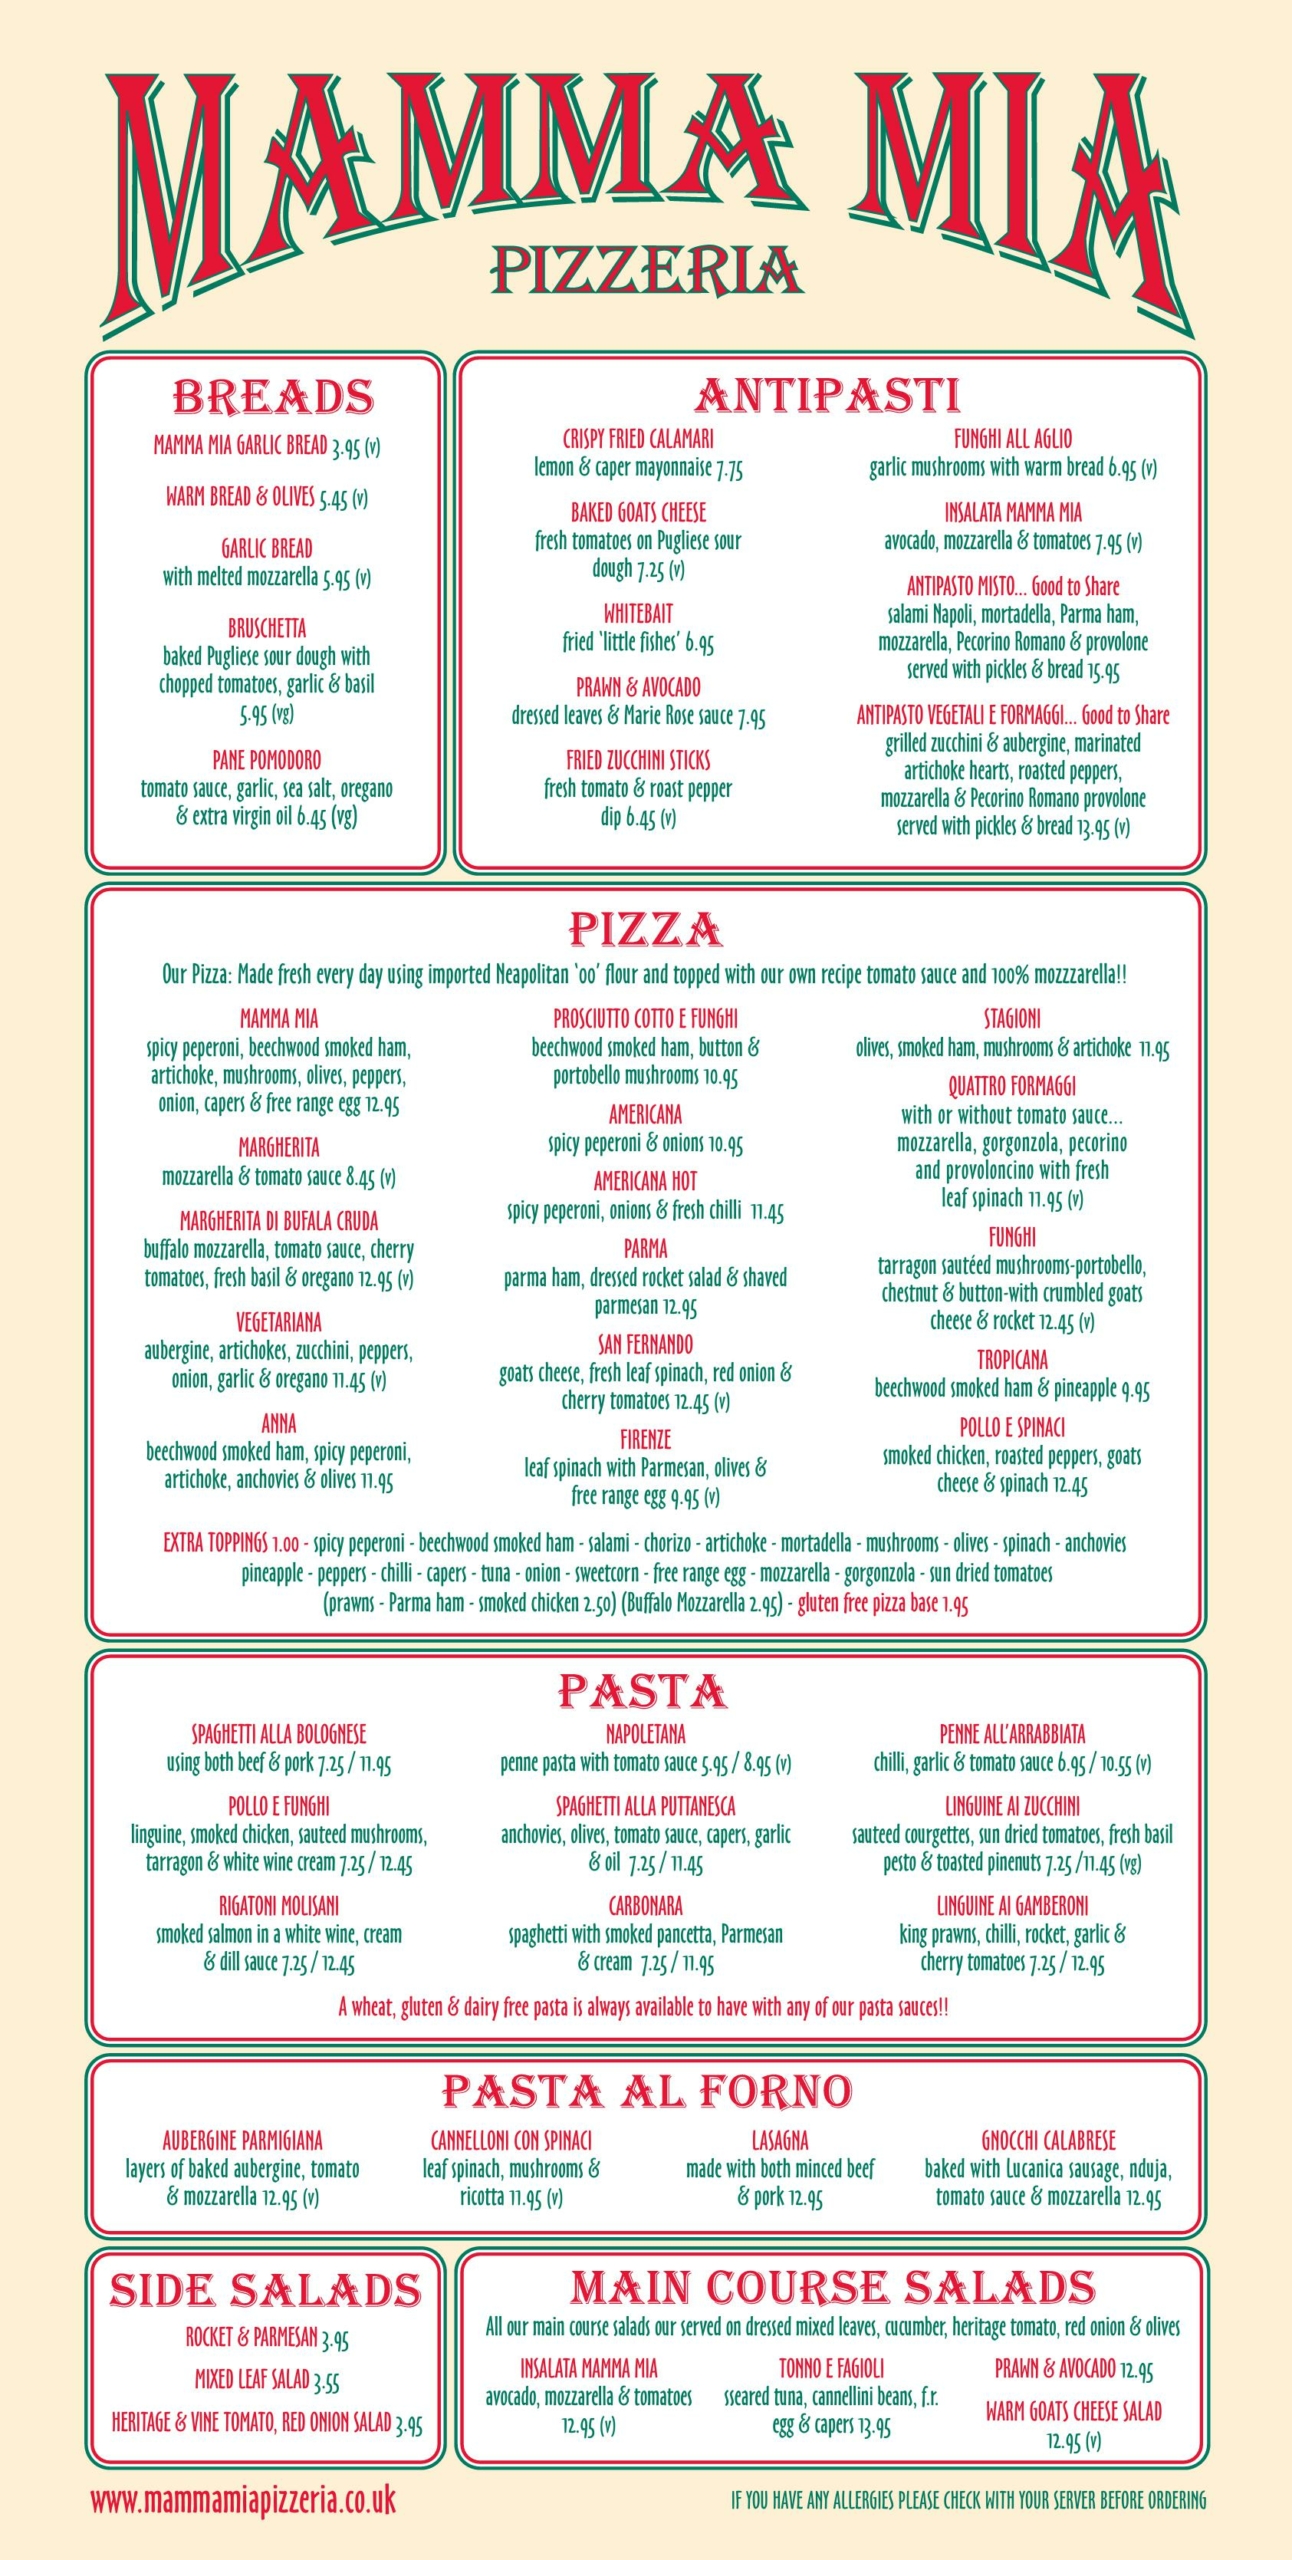 Mamma Mia Pizzeria Italian restaurant - main menu